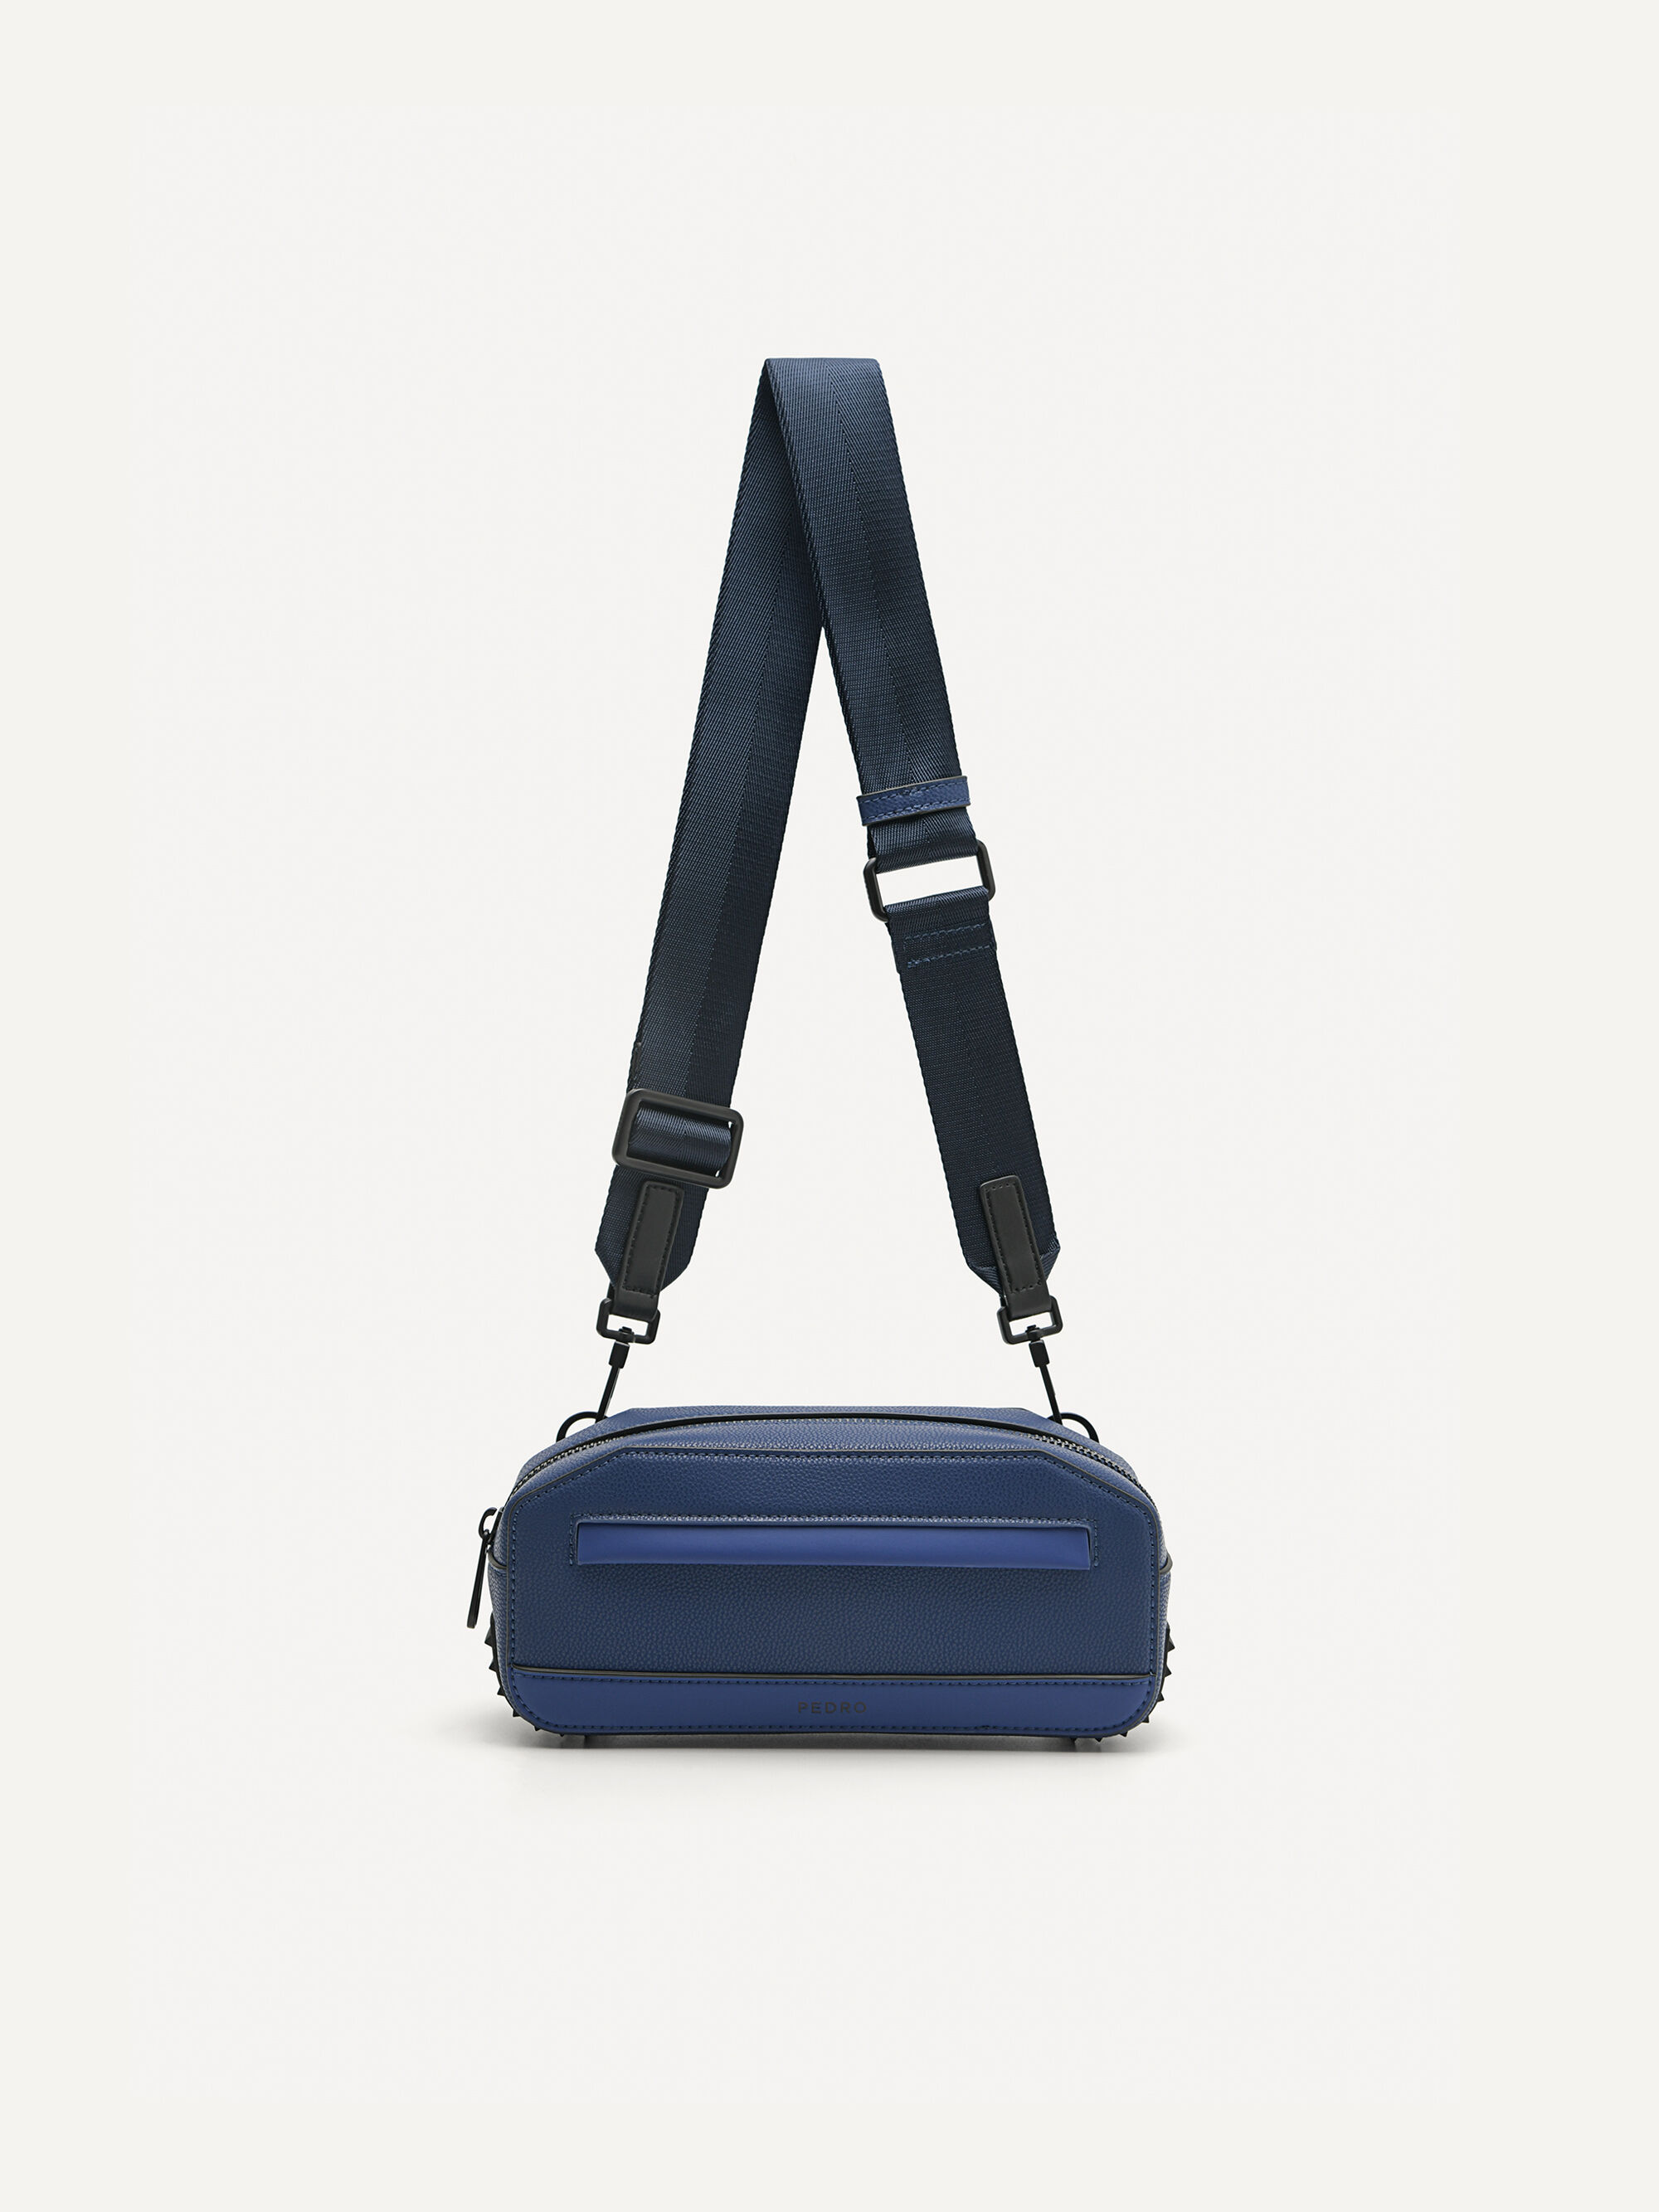 Túi đeo chéo LV Takeoff Sling Bag Black siêu cấp like auth 99% - TUNG  LUXURY™